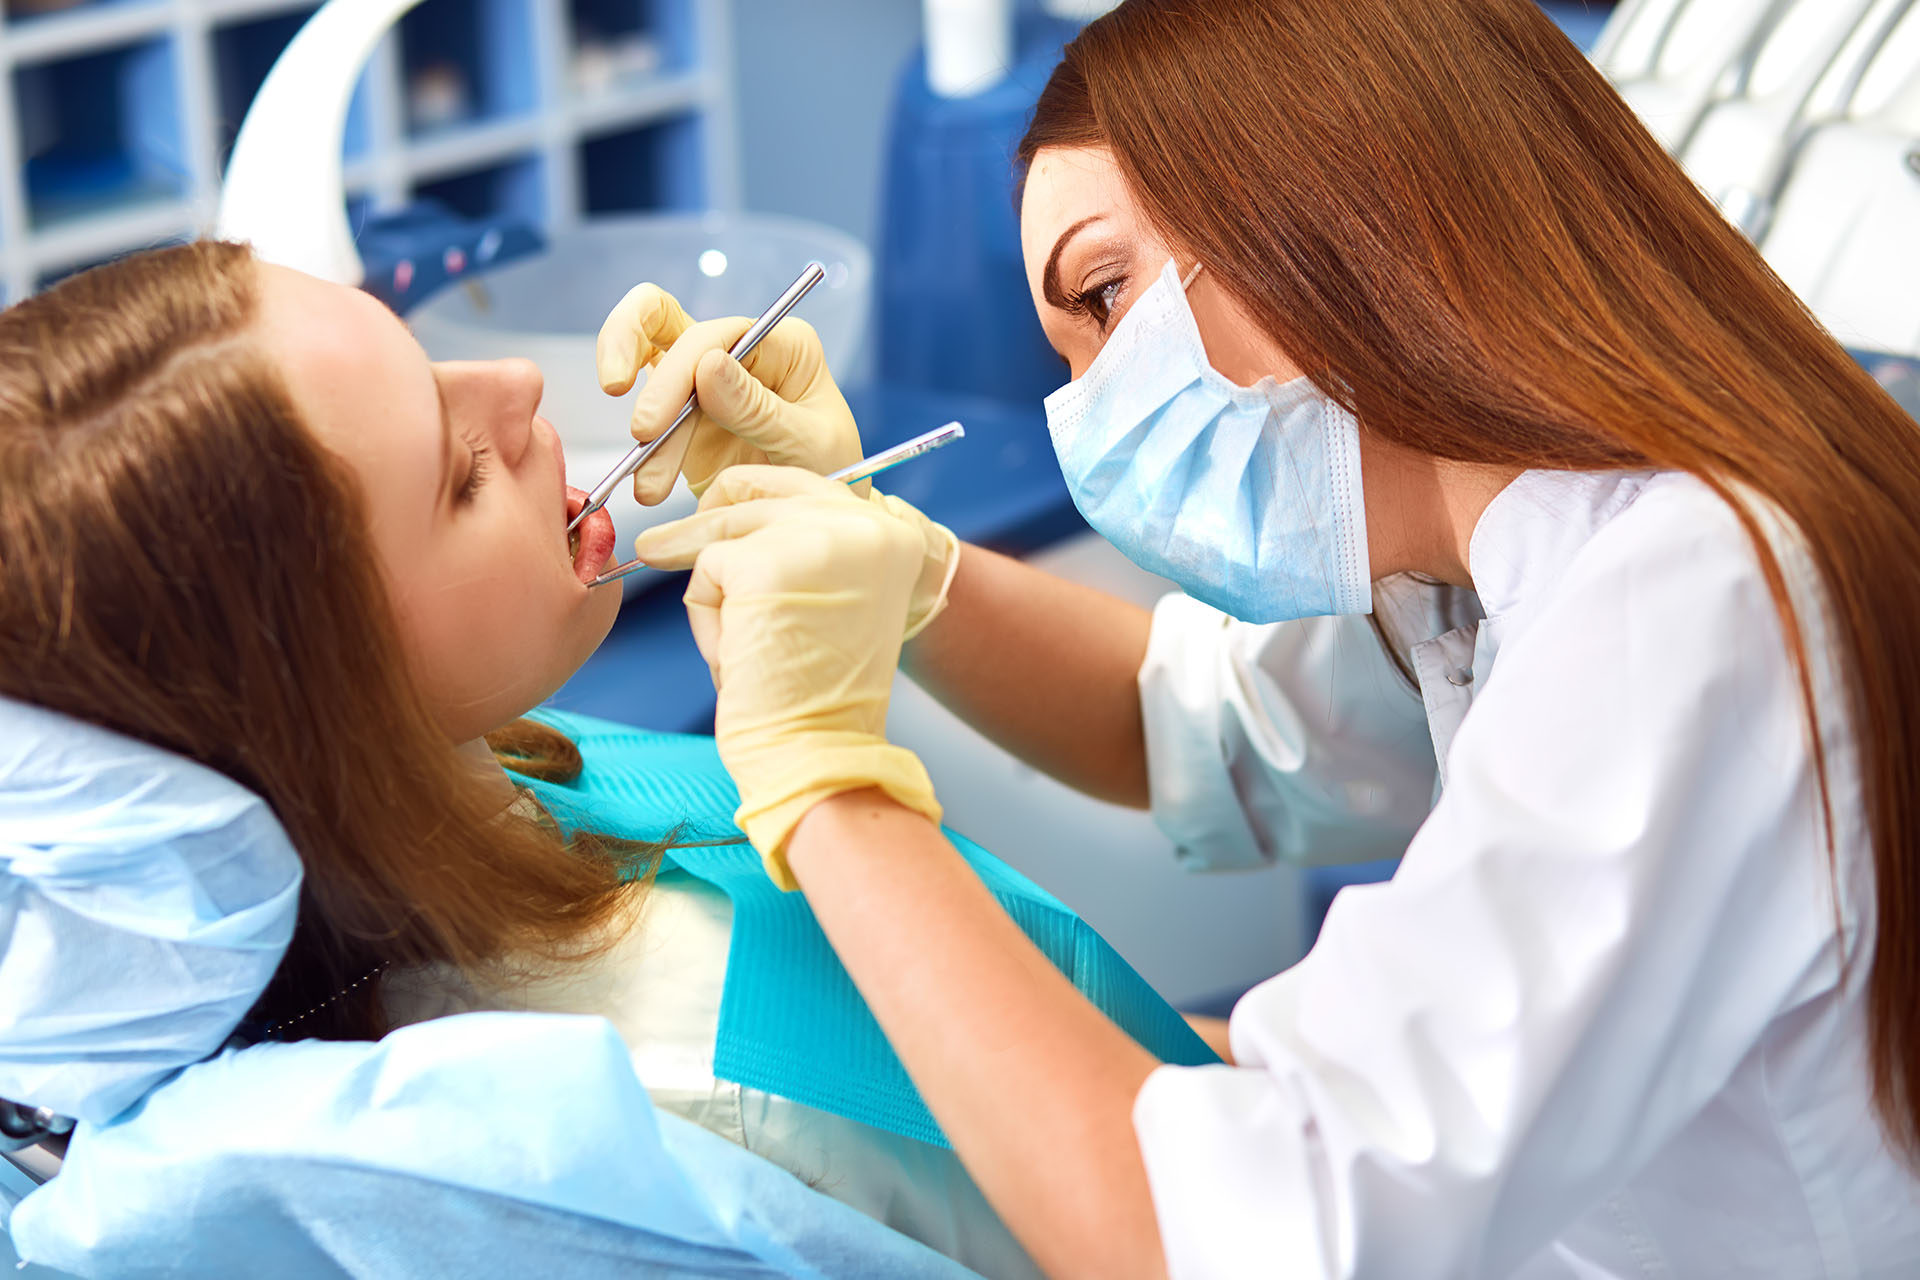 Clínica Dental Andrea Compte, tu Centro Odontológico especializado. Implantes dentales (Implantología) en Vinaròs. Dentista realizando una intervención dental.